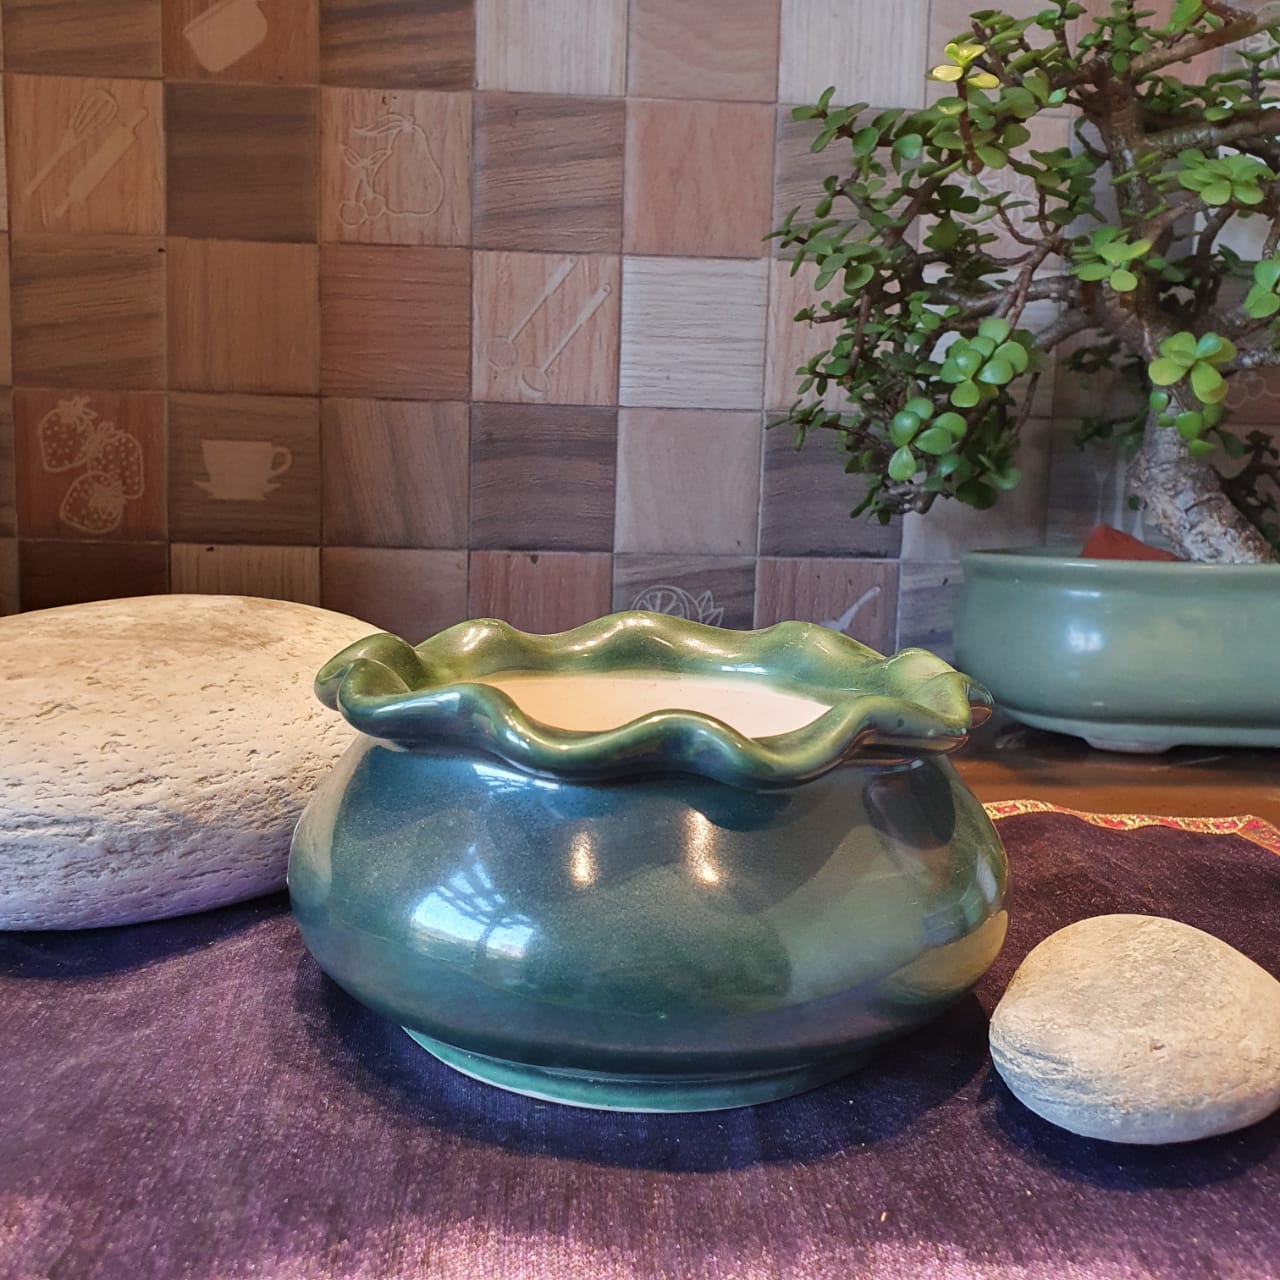 Elegant Floral Round Ceramic Planter, Outdoor and Indoor Planter, Ceramic Planter for Real Plants, 14.5 x 14.5 x 13.5 cm (Jade)